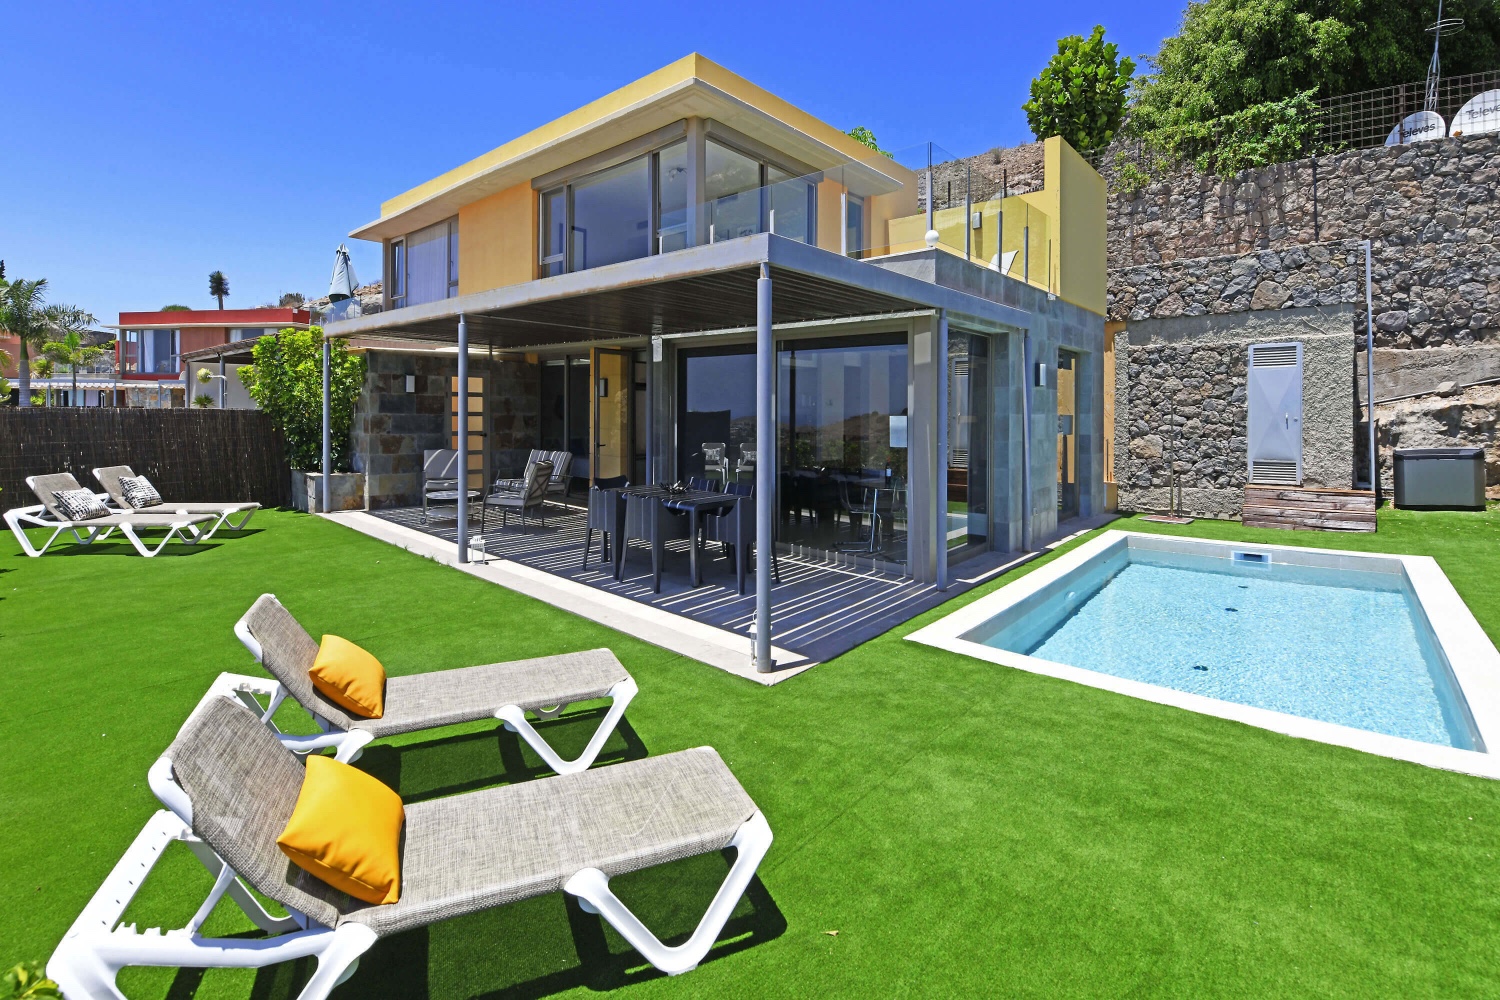 Zweistöckiges Haus mit modernem Design, großen Glasfenstern und einem angenehmen Außenbereich mit privatem Pool